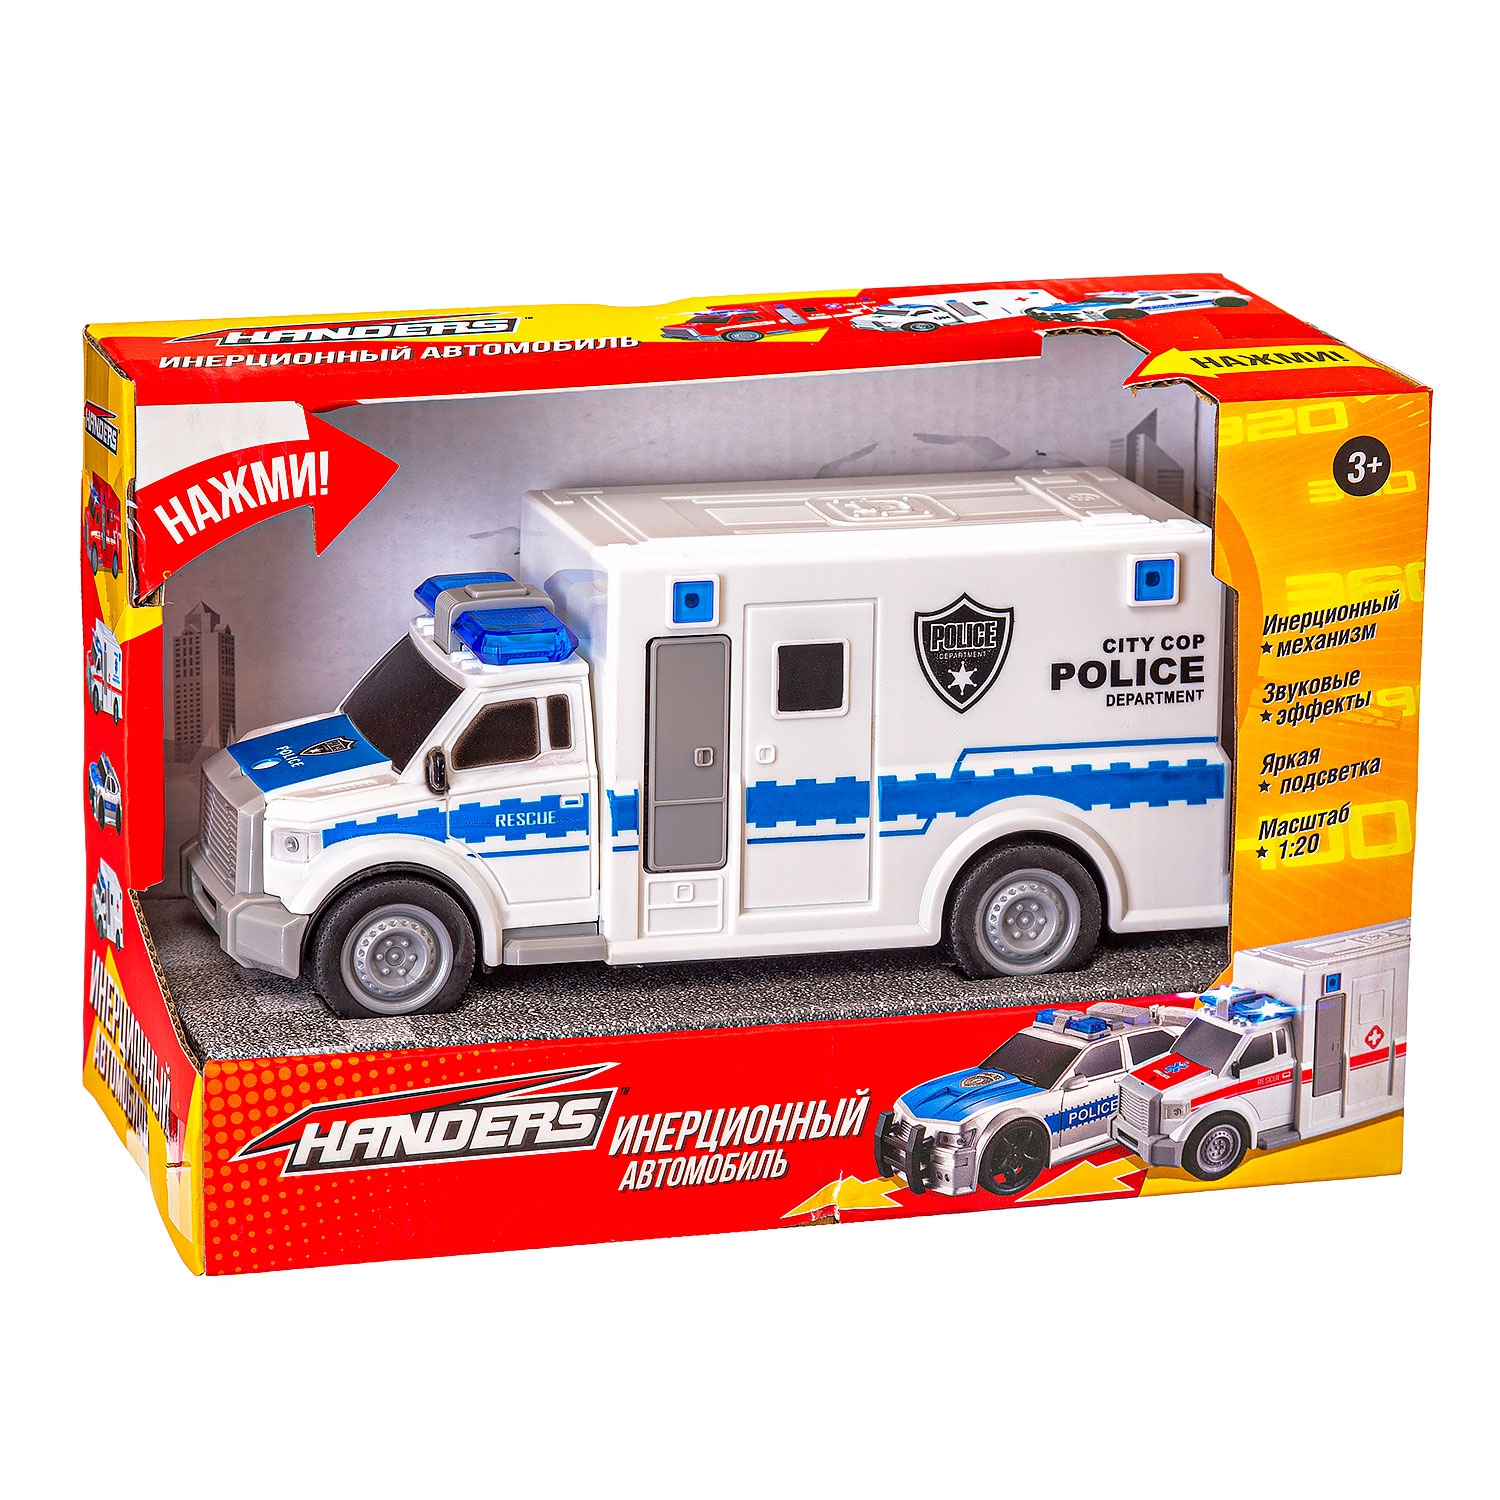 Инерционная игрушка Handers Полицейский фургон (19 см, 1:20, свет, звук)